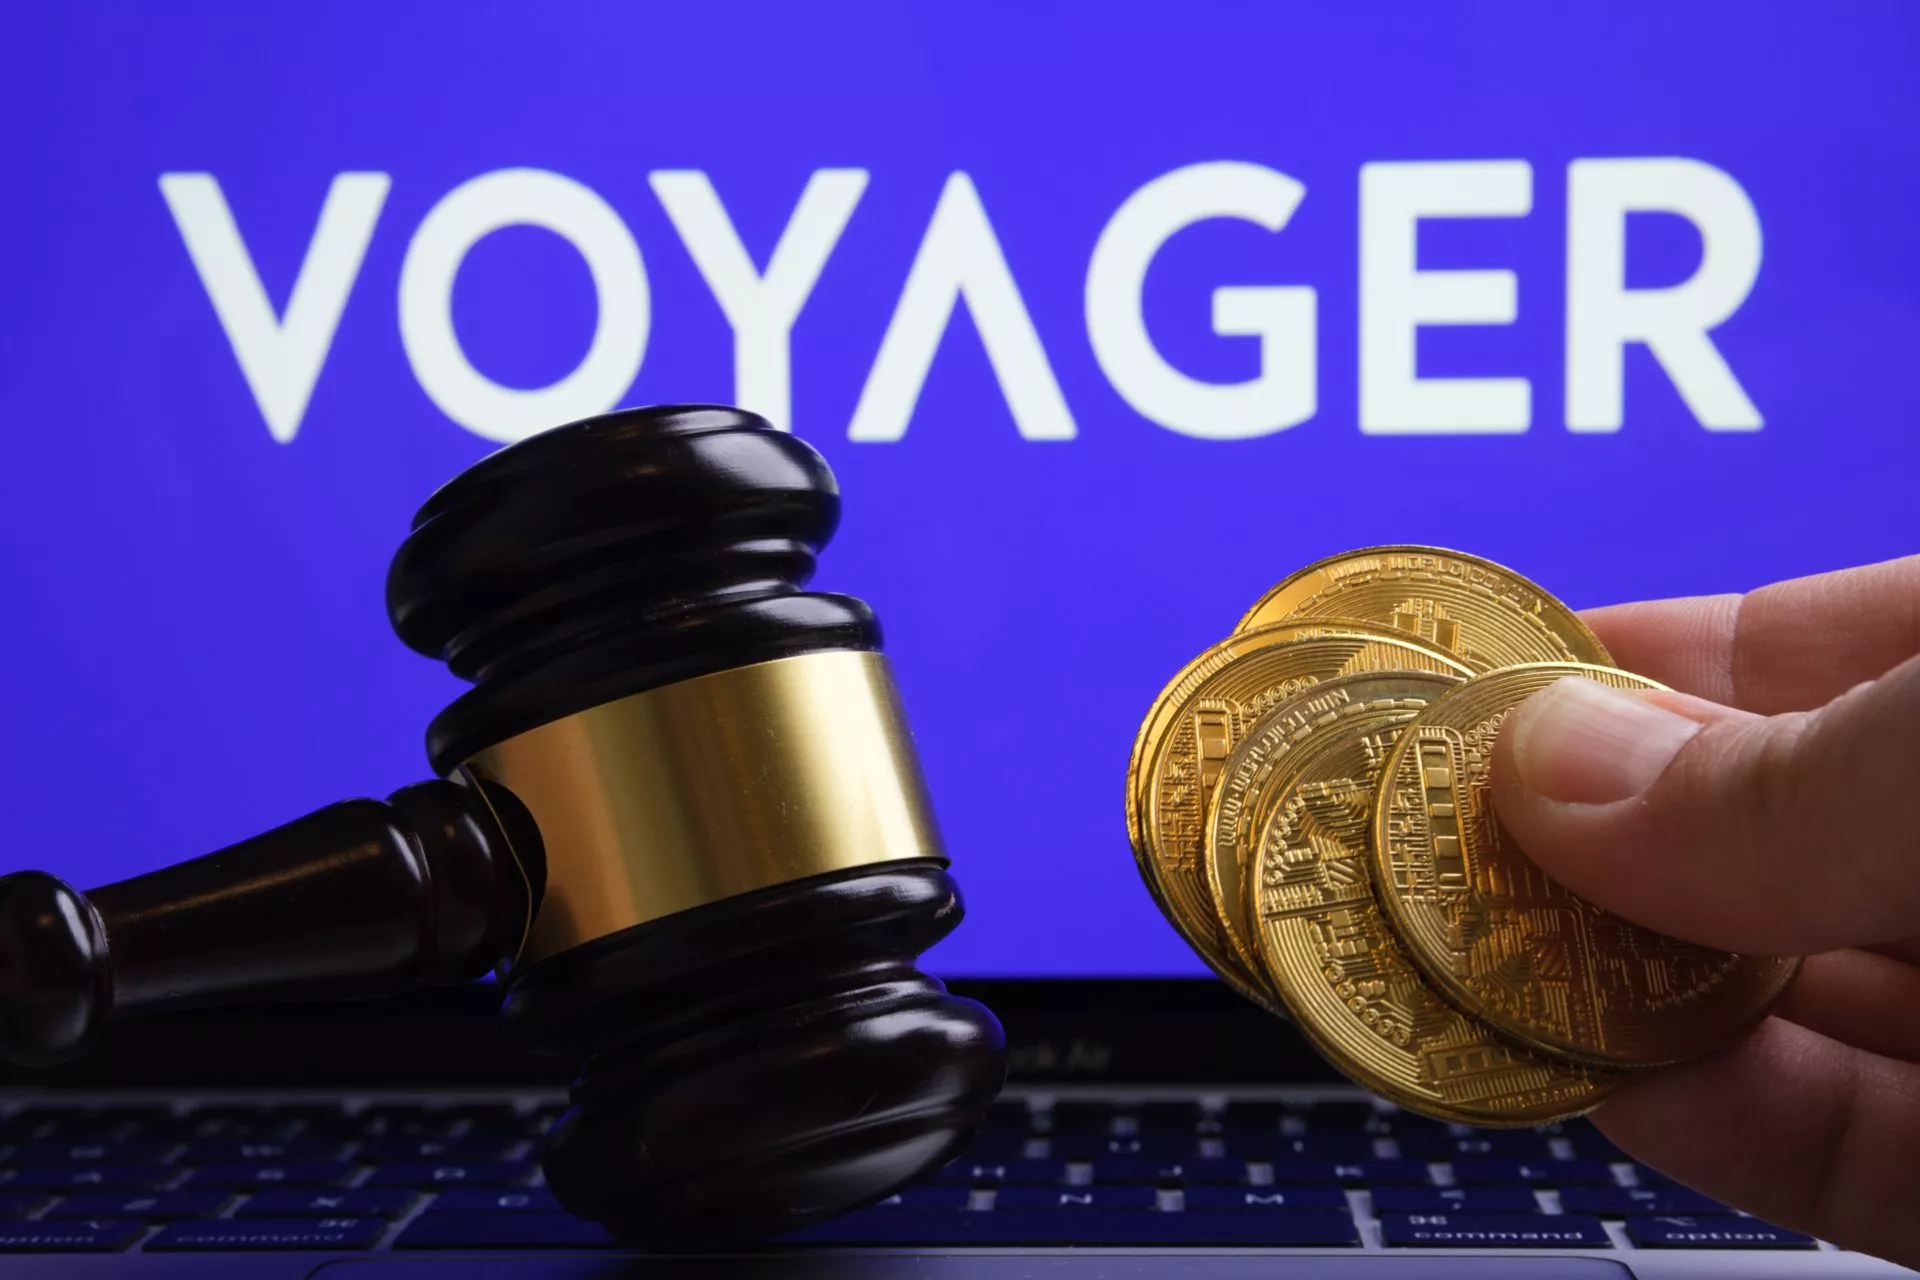 Rechtbank verleent Voyager initiële goedkeuring voor $1 miljard Binance deal